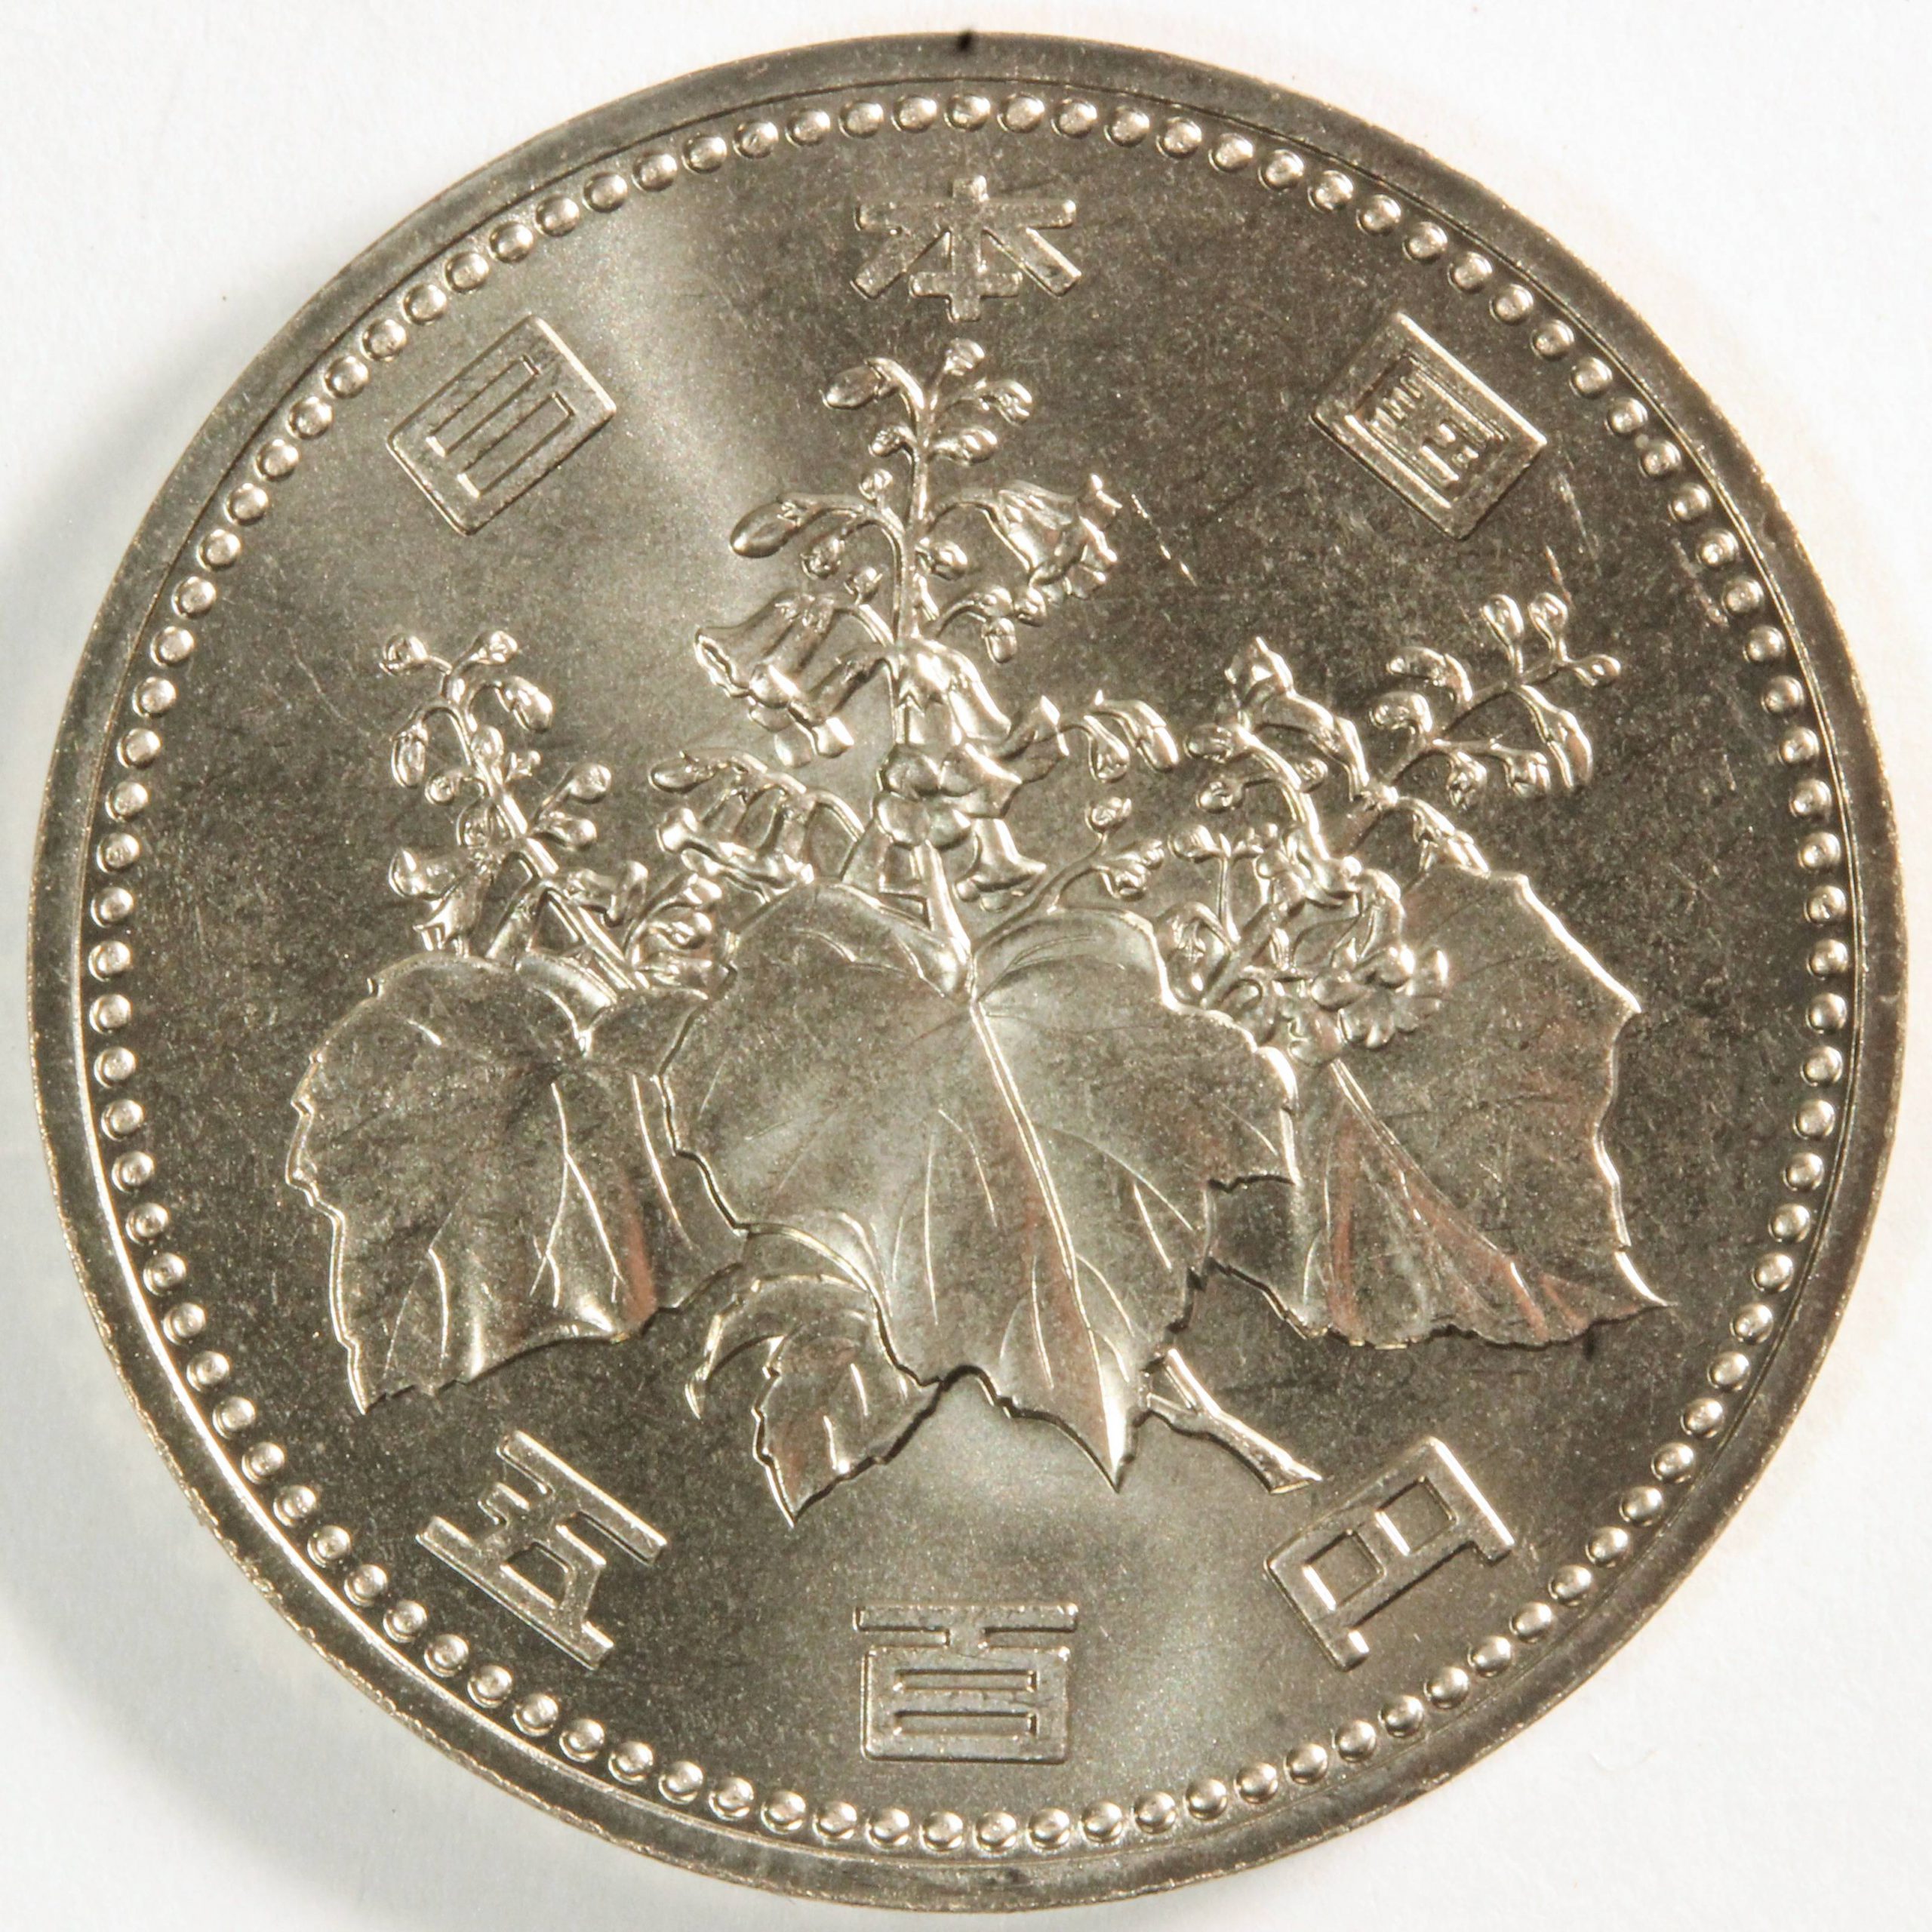 500円白銅貨 平成元年 未使用品 コイン 古銭 ミスターコインズ